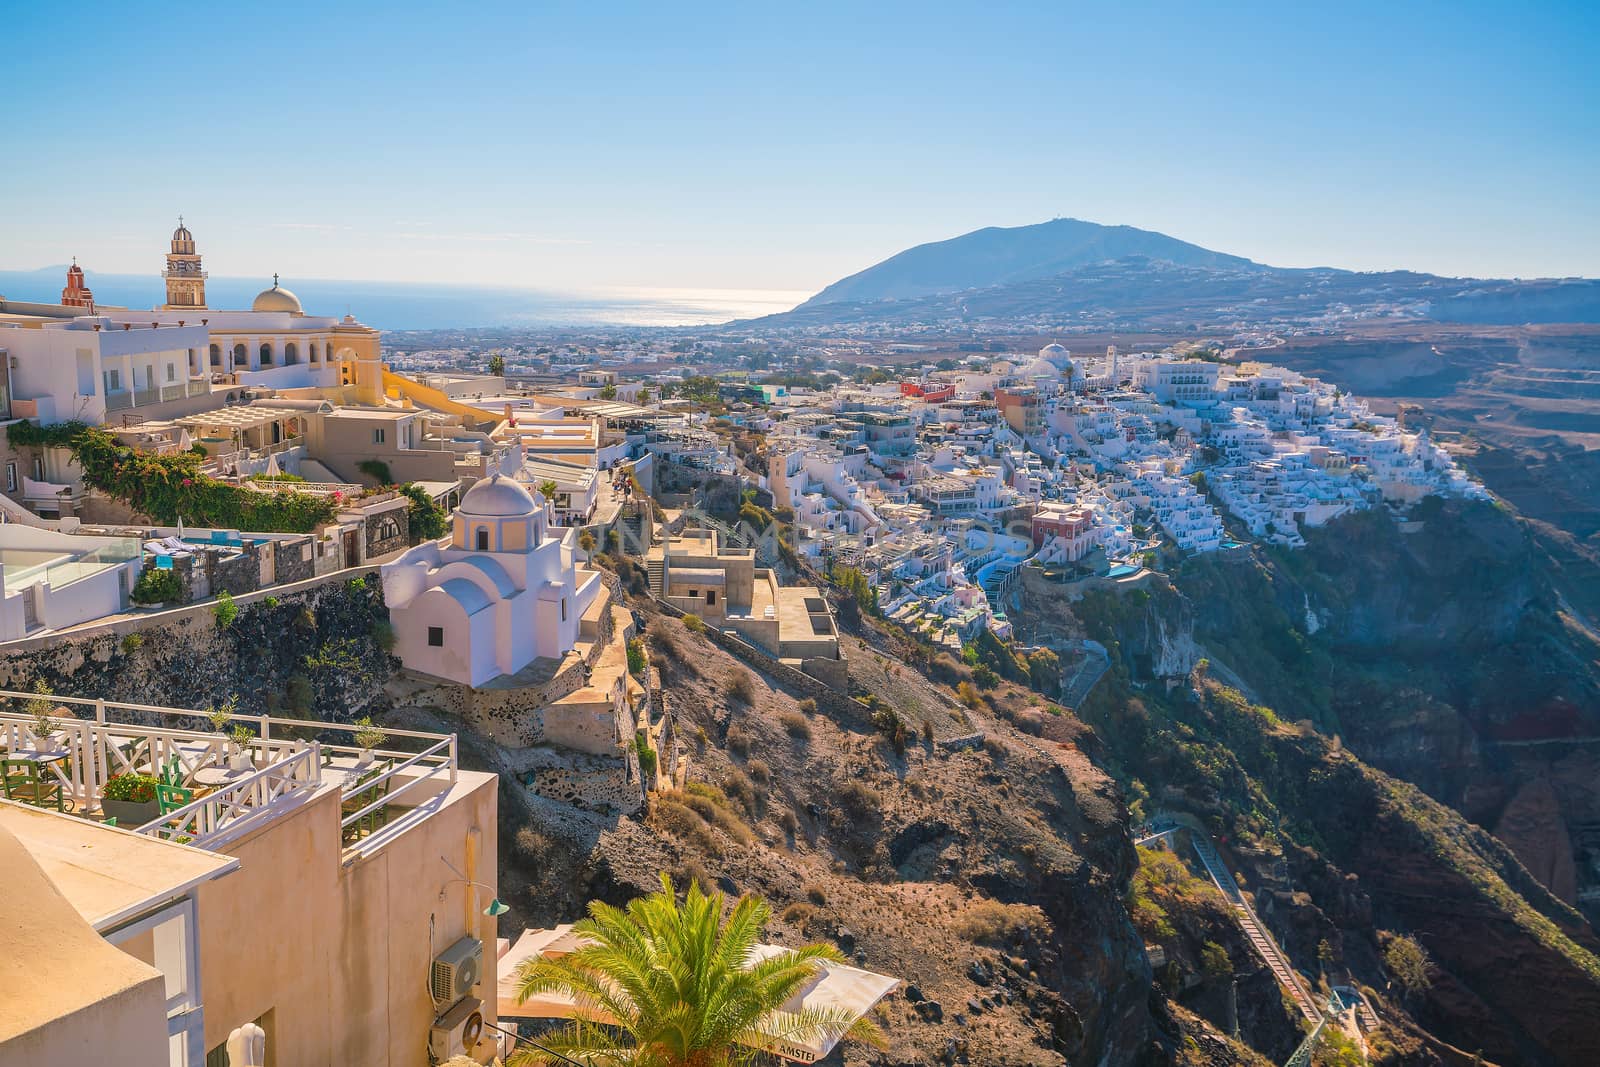 Fira town cityscape at Santorini island in Greece. Aegean sea